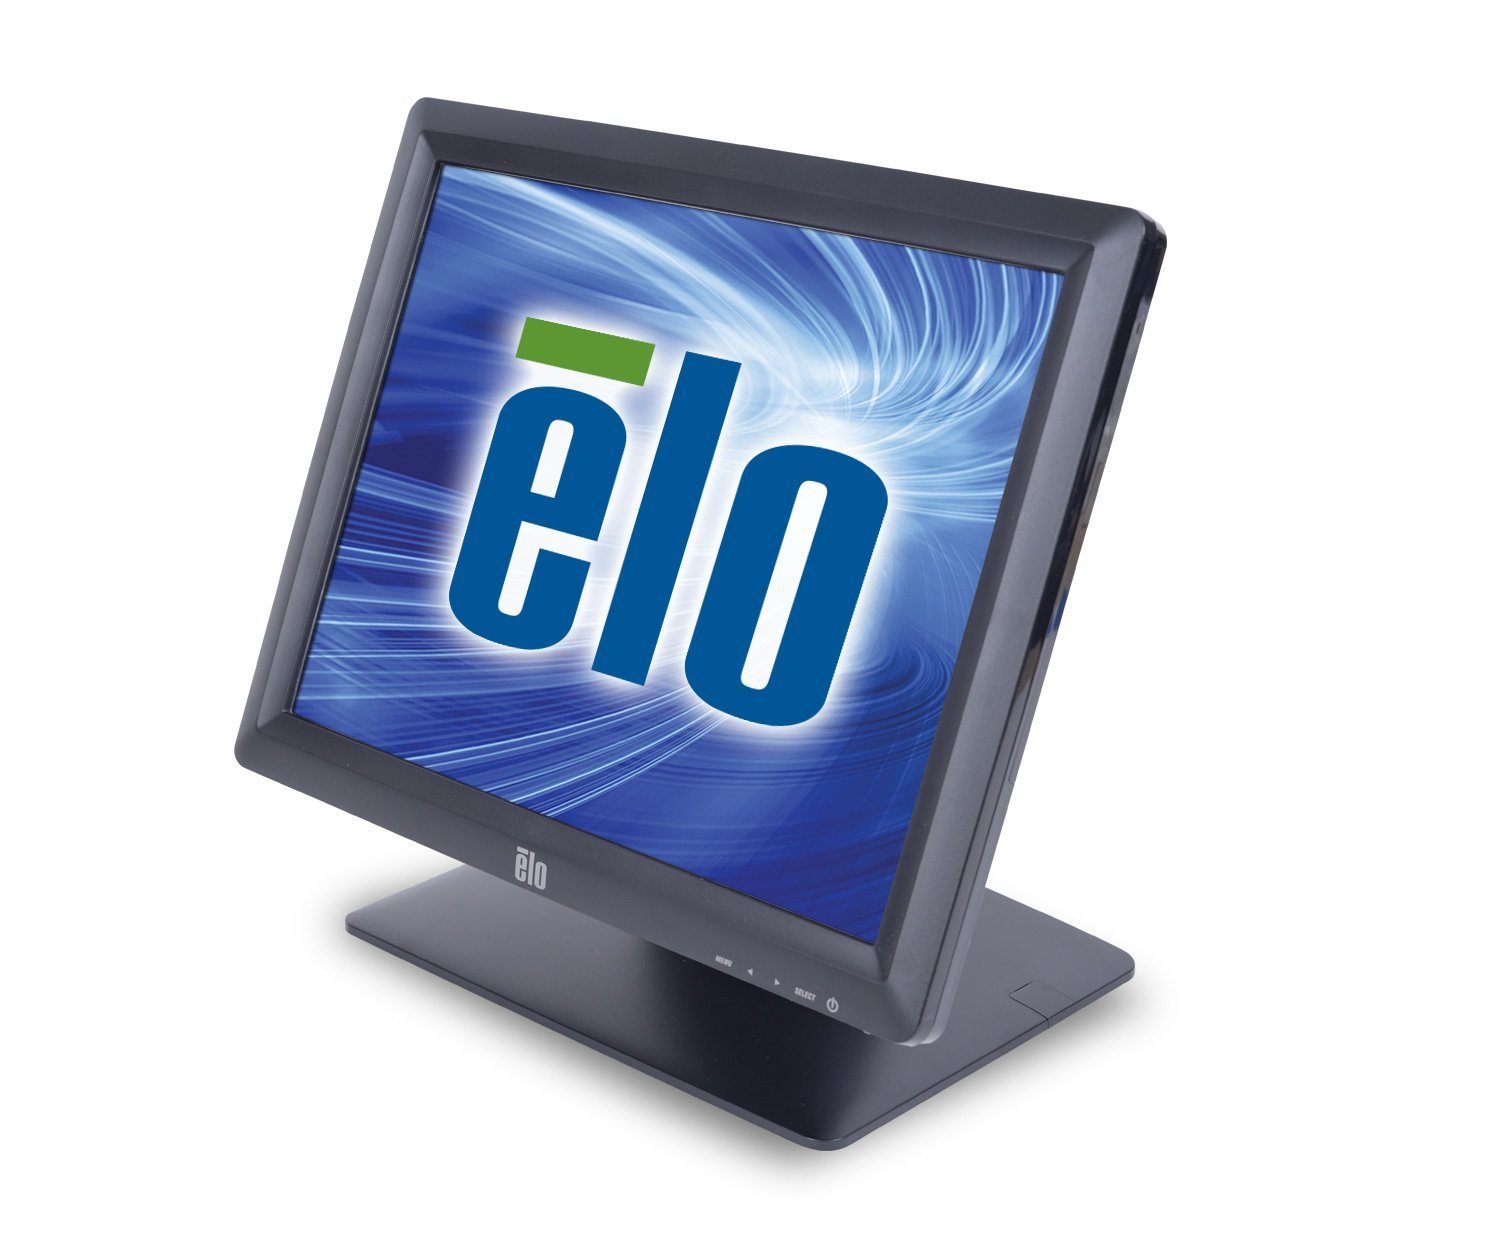 Elo Desktop Touchmonitore 1517L AccuTouch – 15-Zoll-Tou...